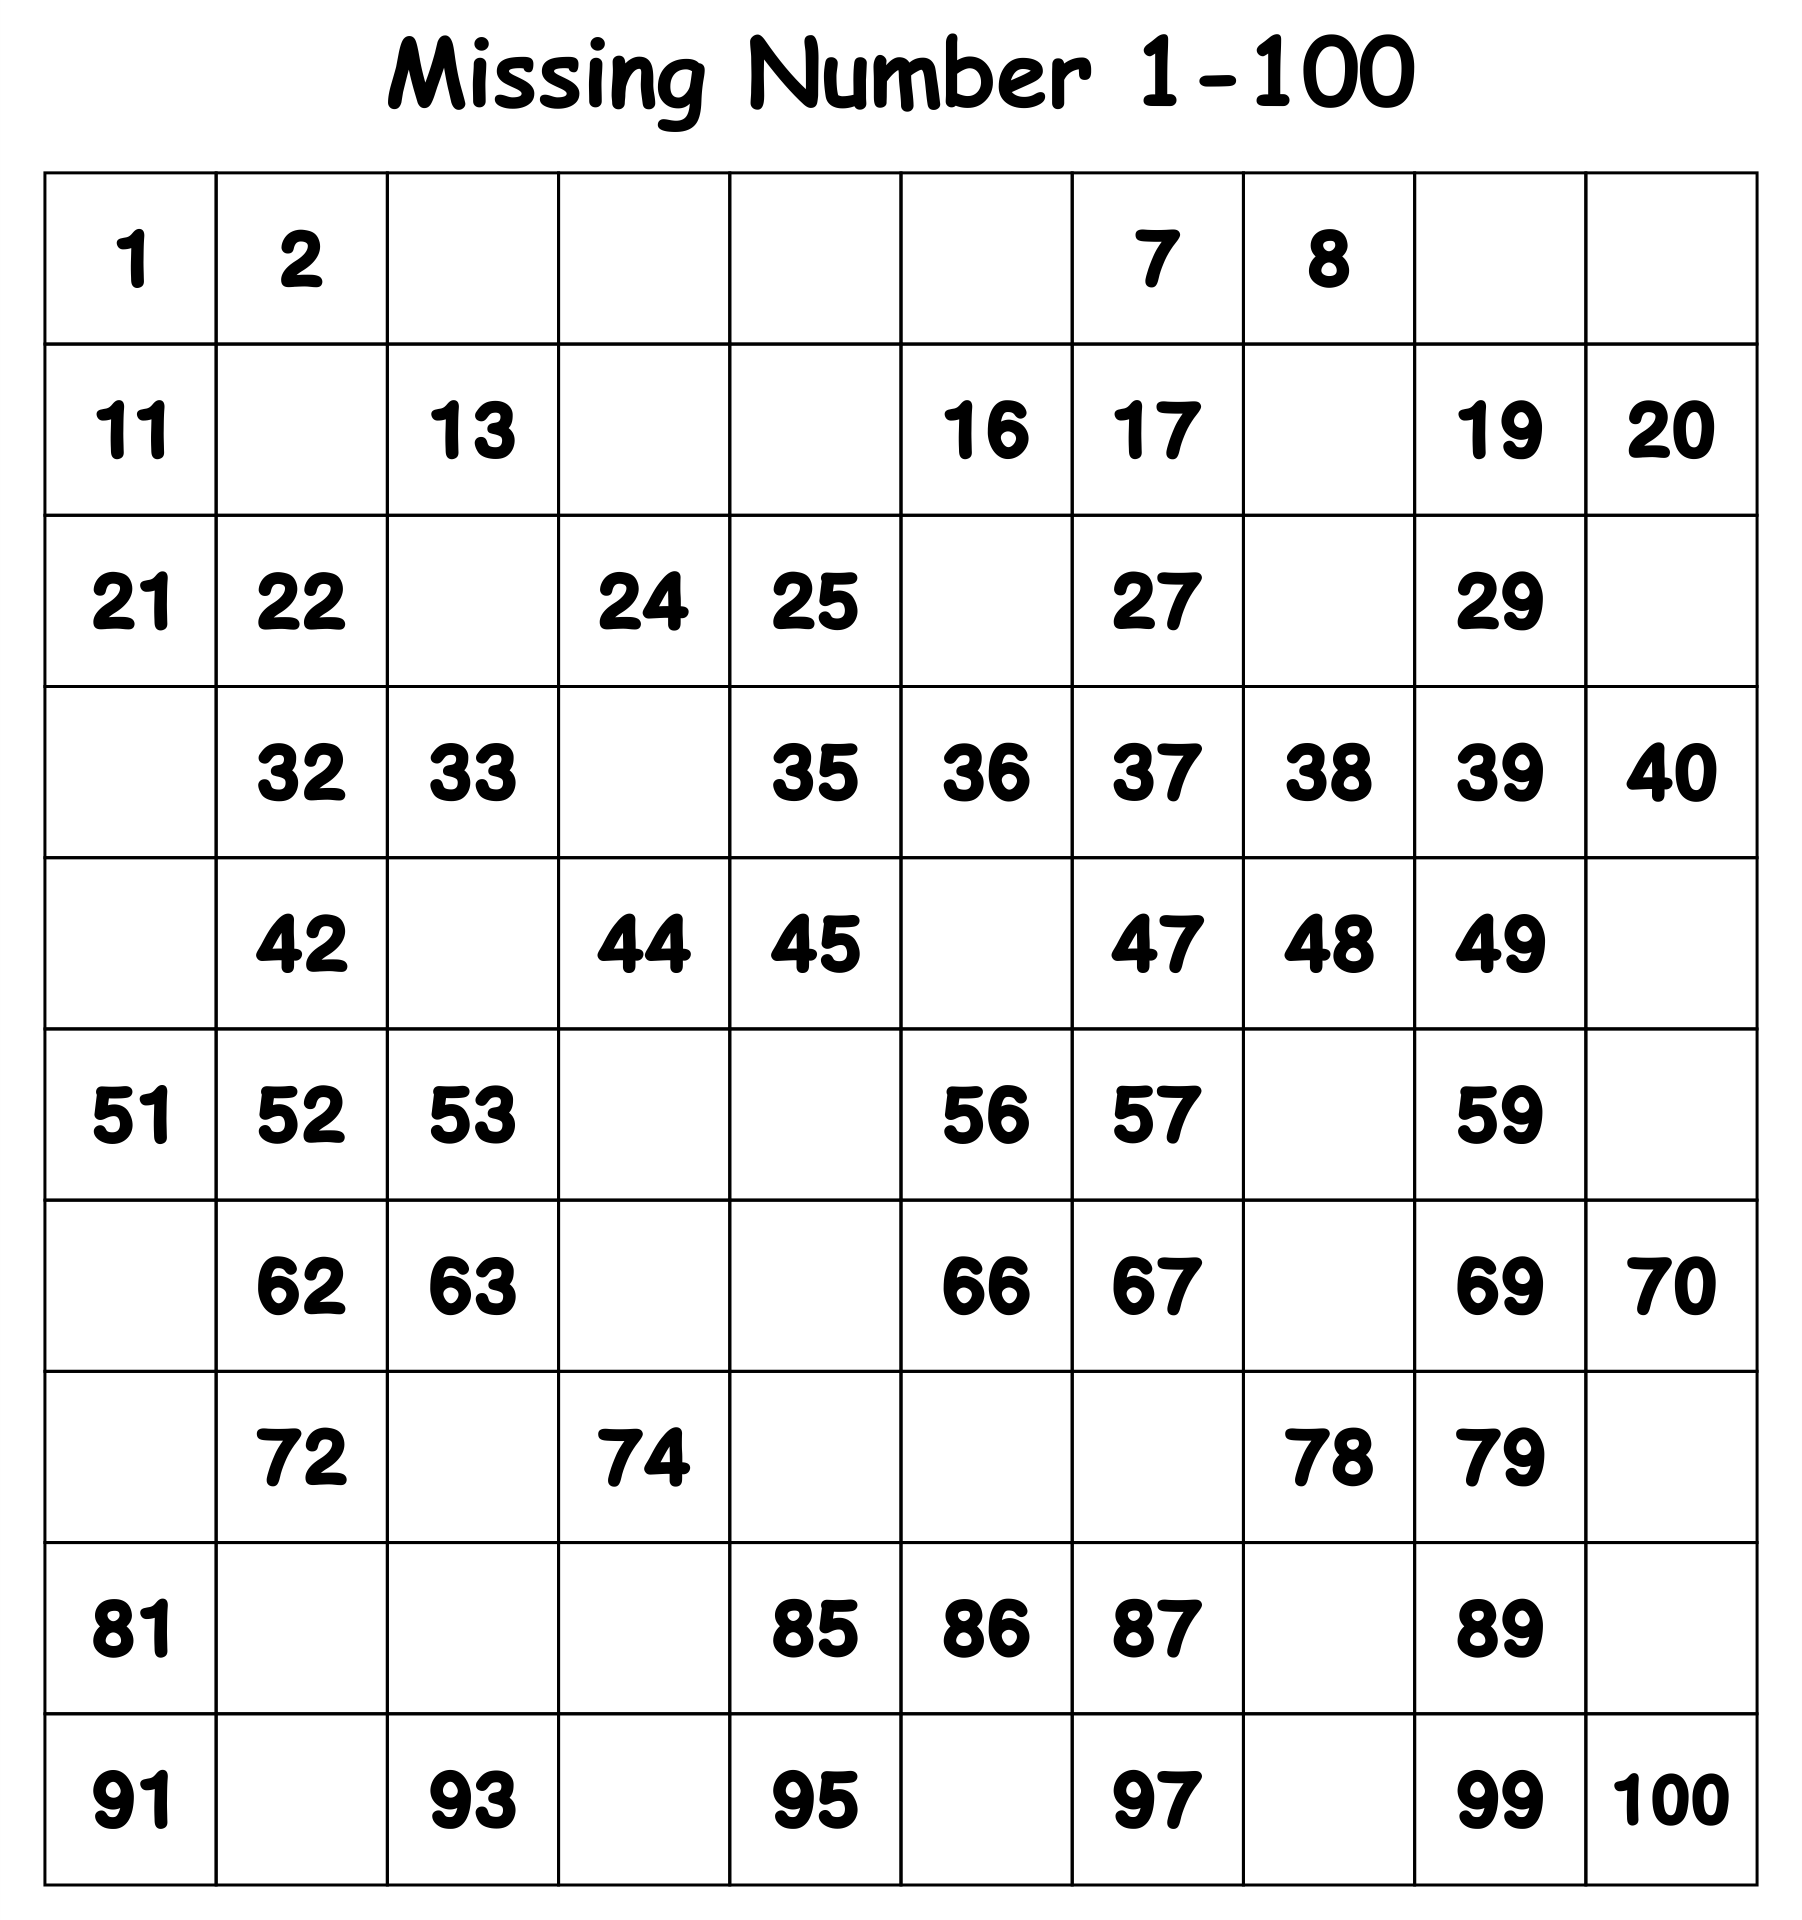 numbers-1-100-worksheets